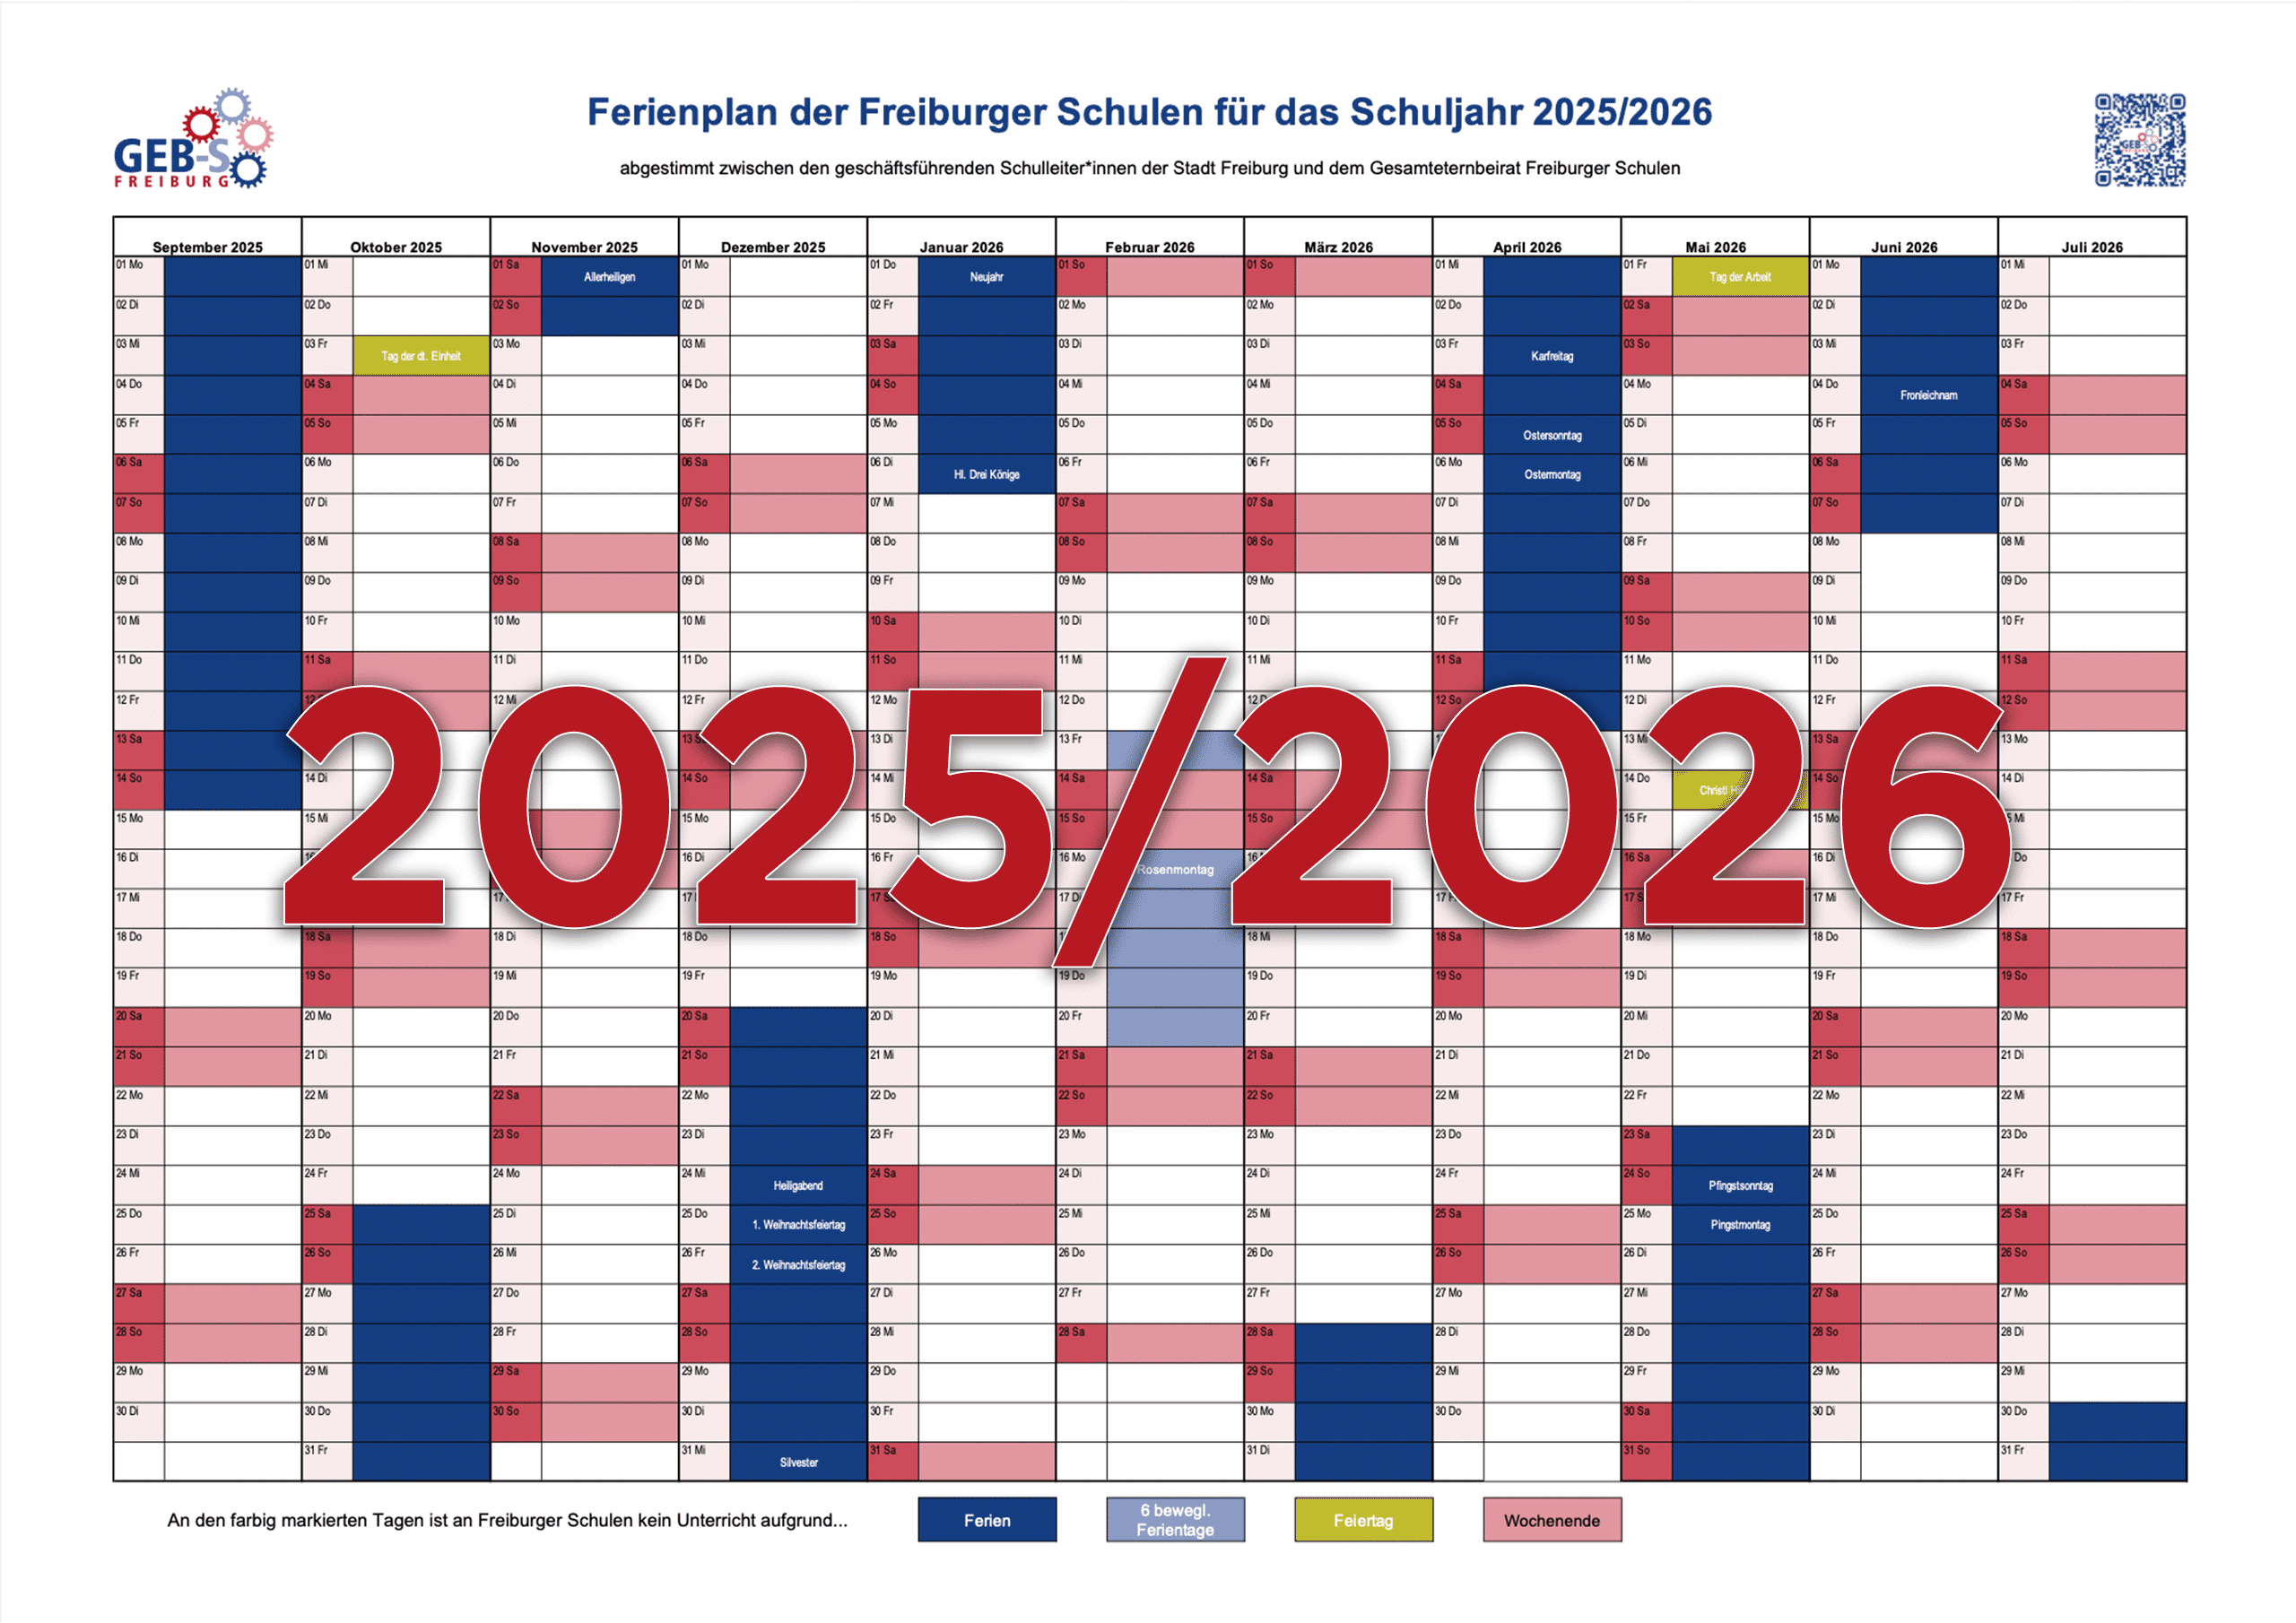 Alle Schulferien in Freiburg in unserem Ferienkalender für das Schuljahr 2025/2026